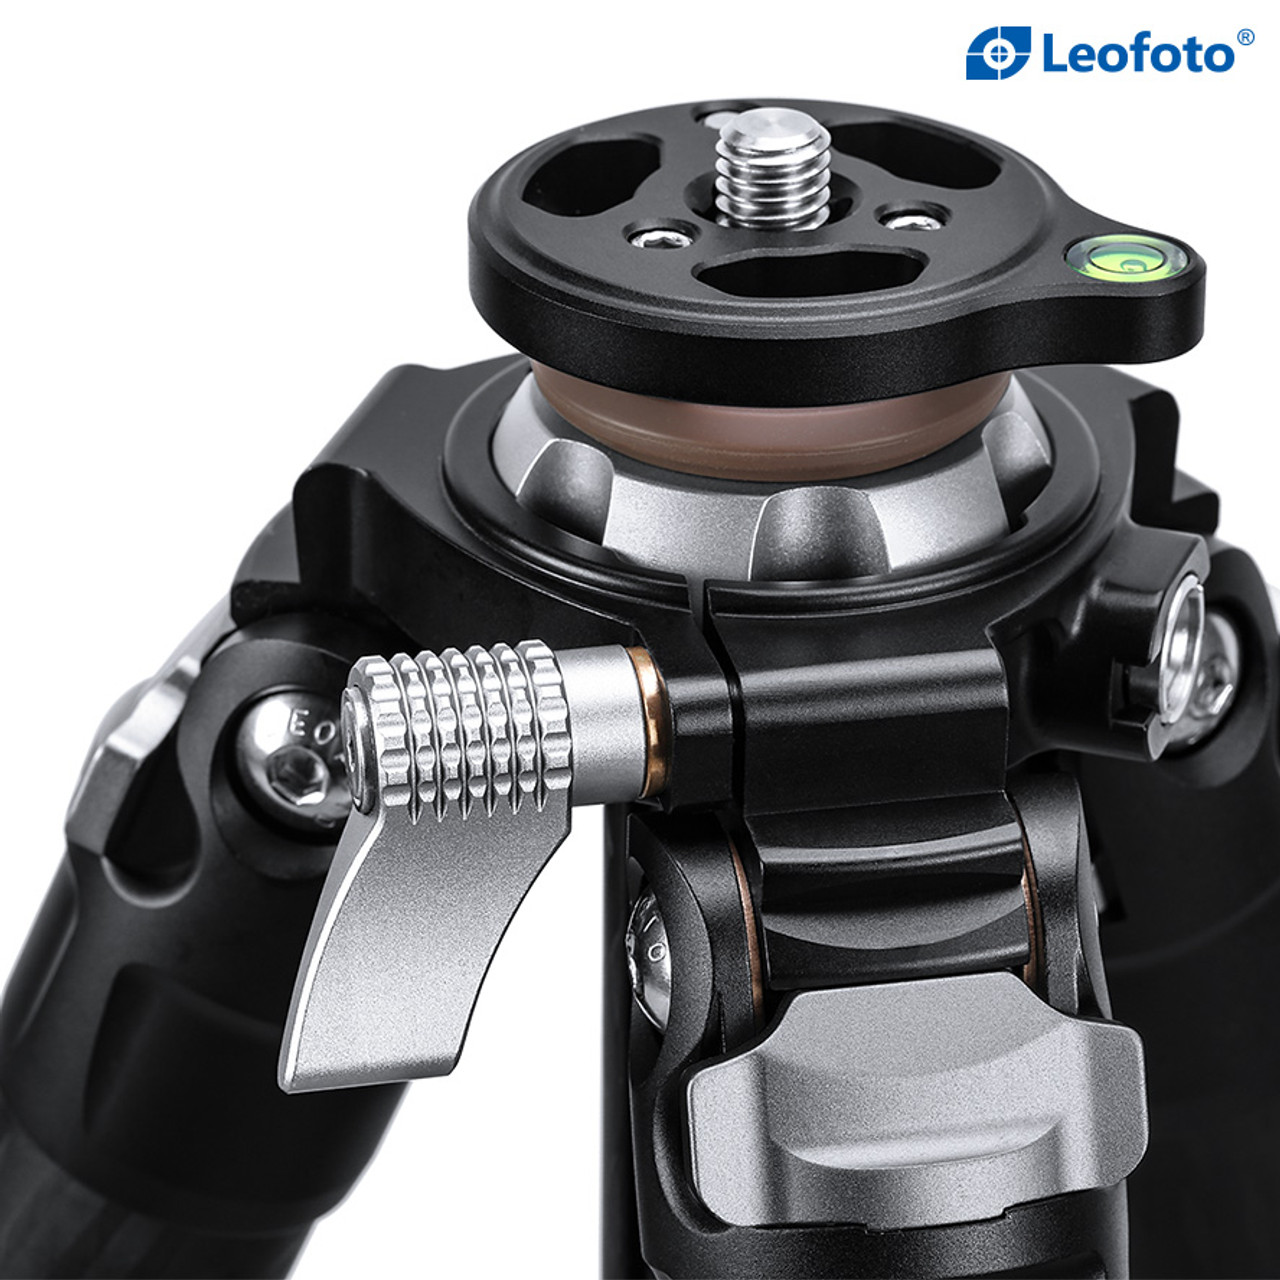 Leofoto 4-Section Carbon Fiber Video Head Systems LV Flip Lock